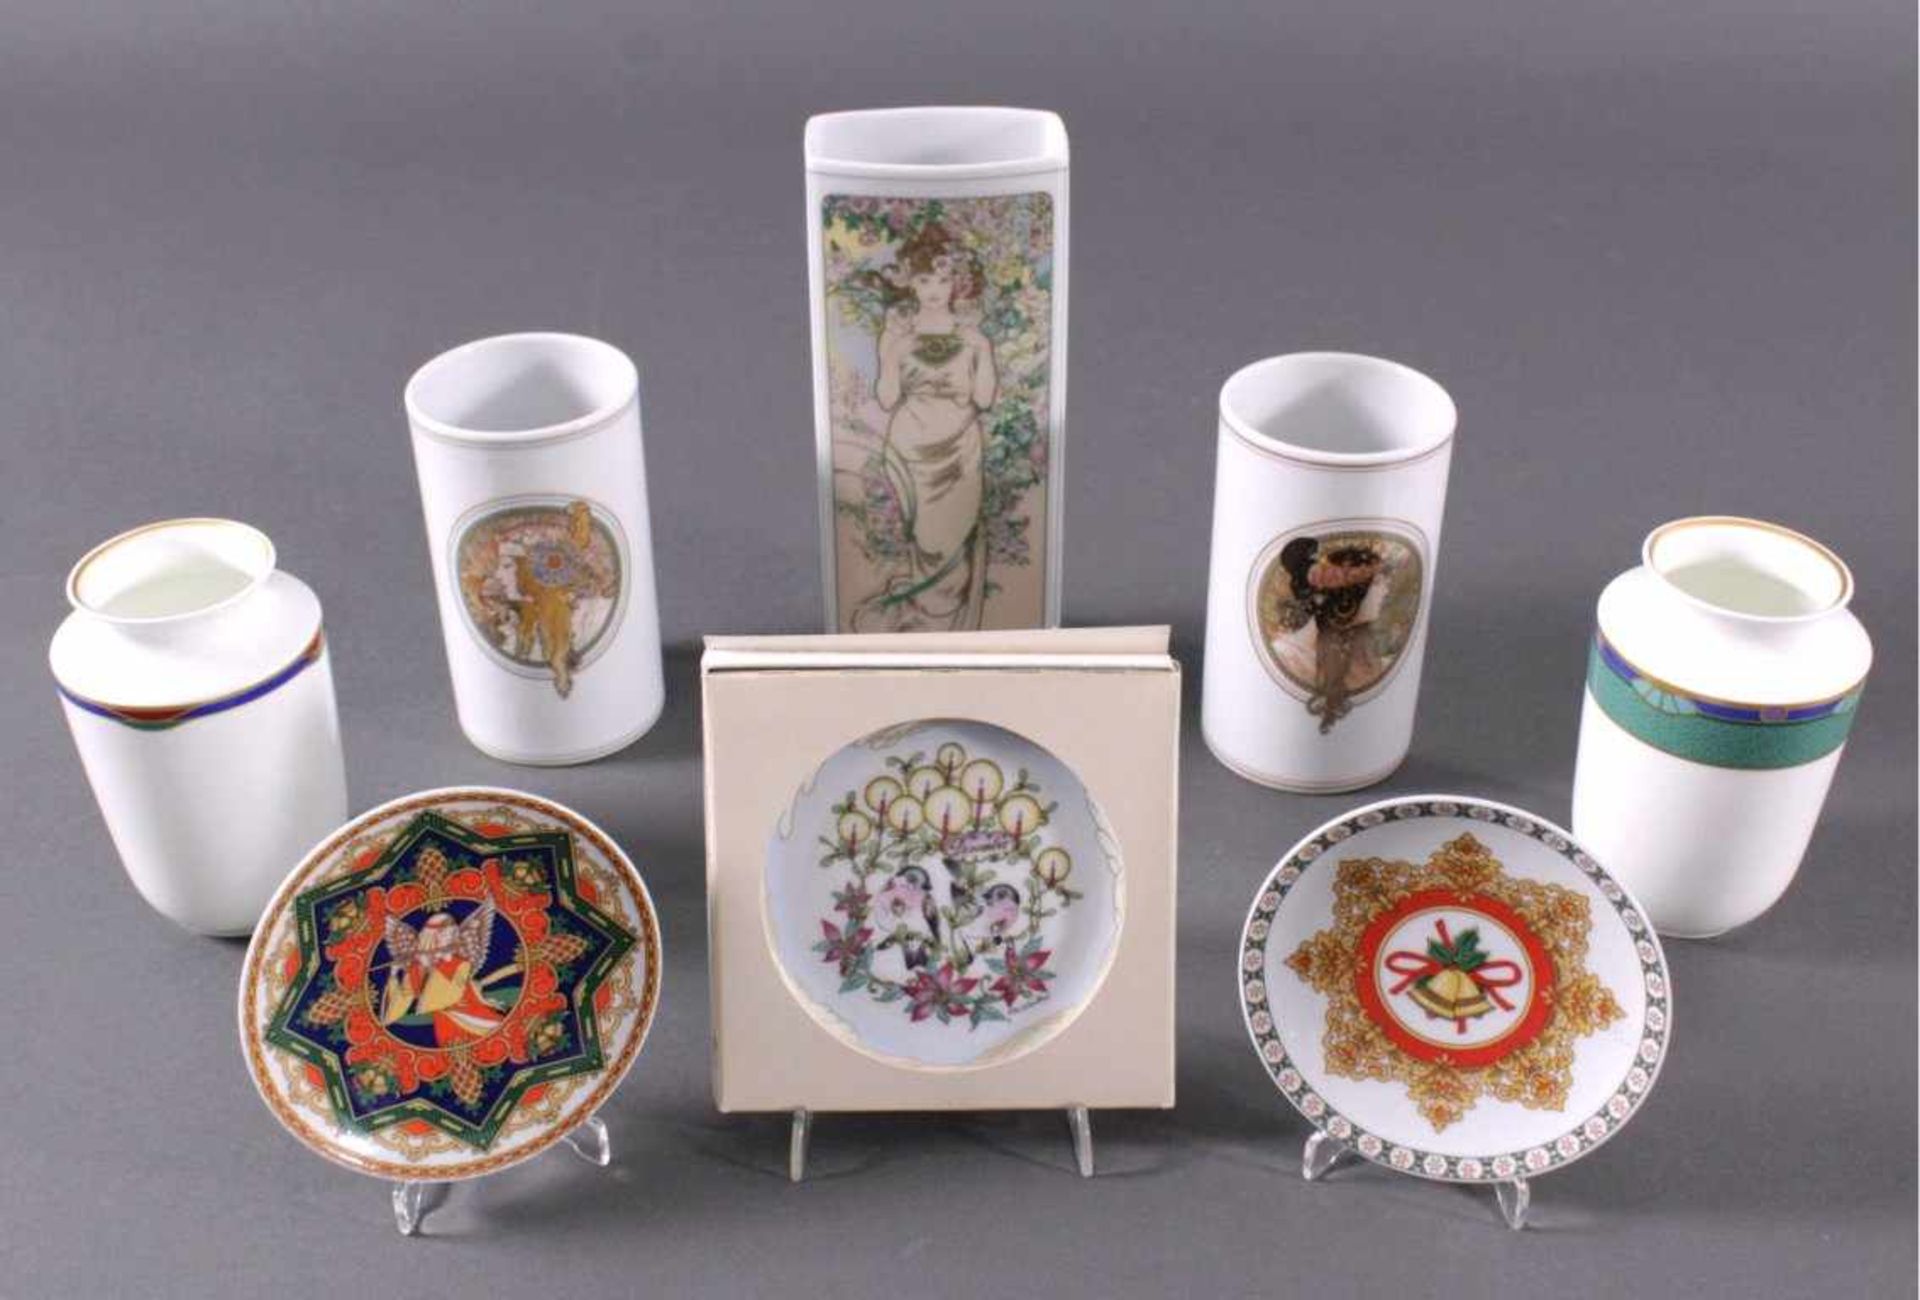 Hutschenreuther Porzellan8 Teile. 5 Vasen, 2 Schalen, 1 Untersetzer des MonatsDezember. Verschiedene - Bild 2 aus 2